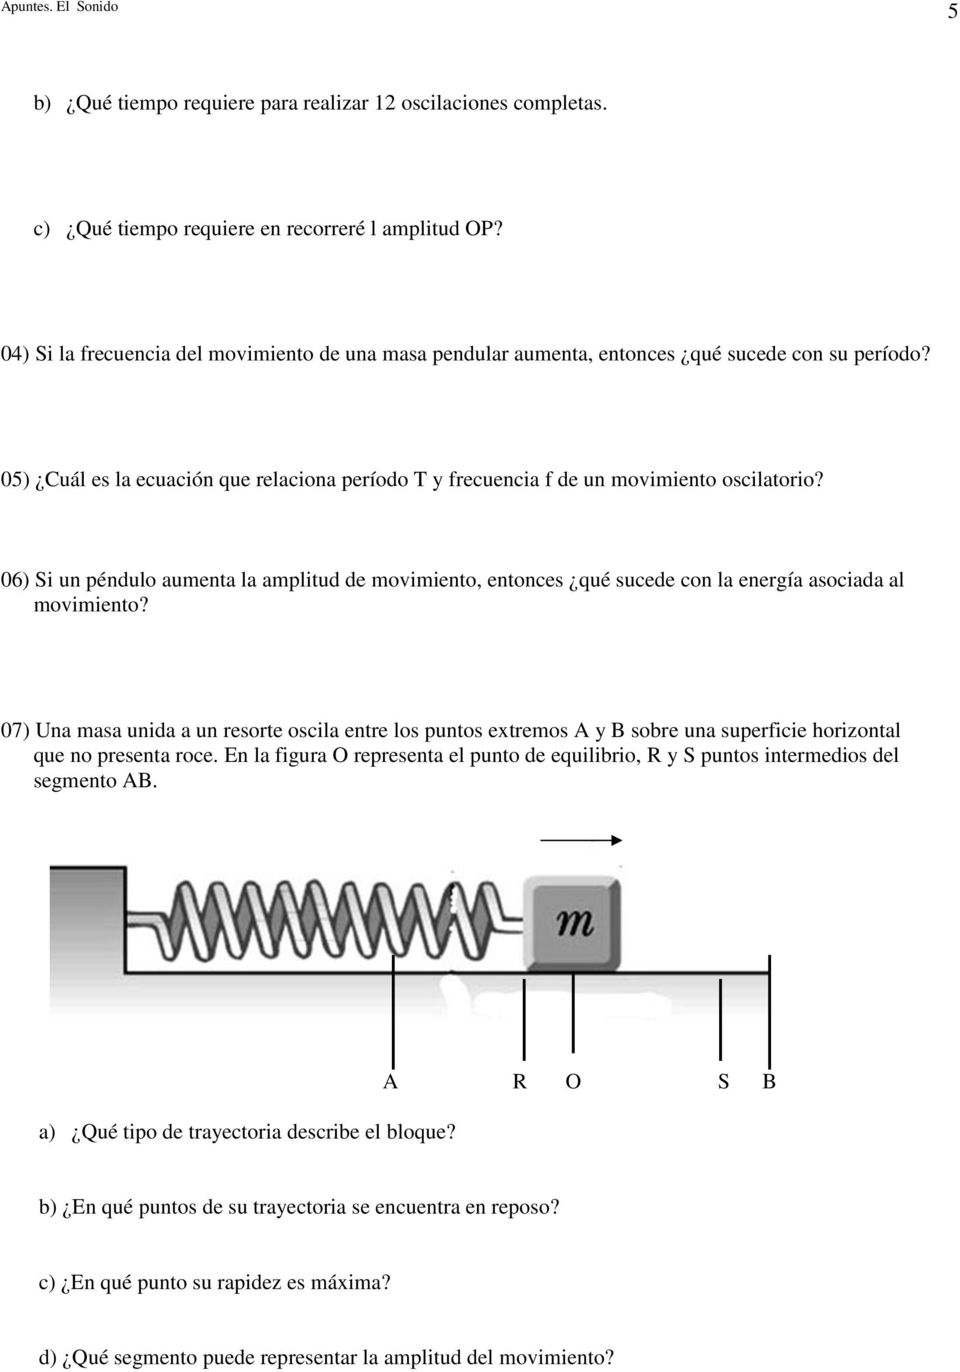 06) Si un péndulo aumenta la amplitud de movimiento, entonces qué sucede con la energía asociada al movimiento?